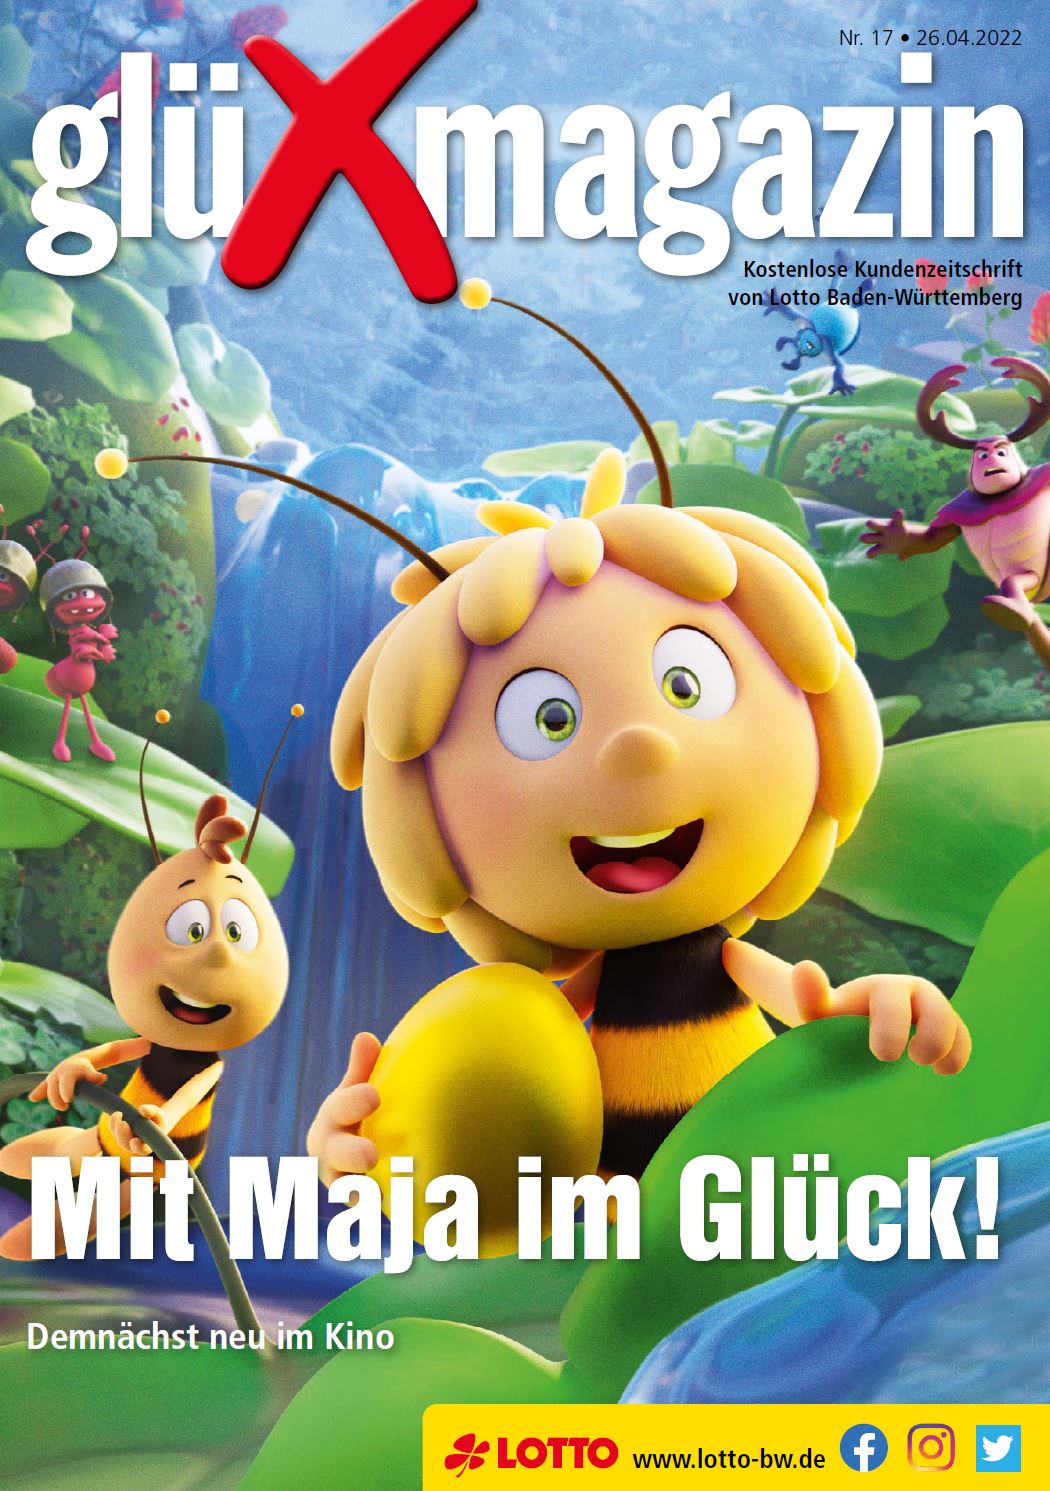 glüXmagazin Nr. 17 - 26.04.2022